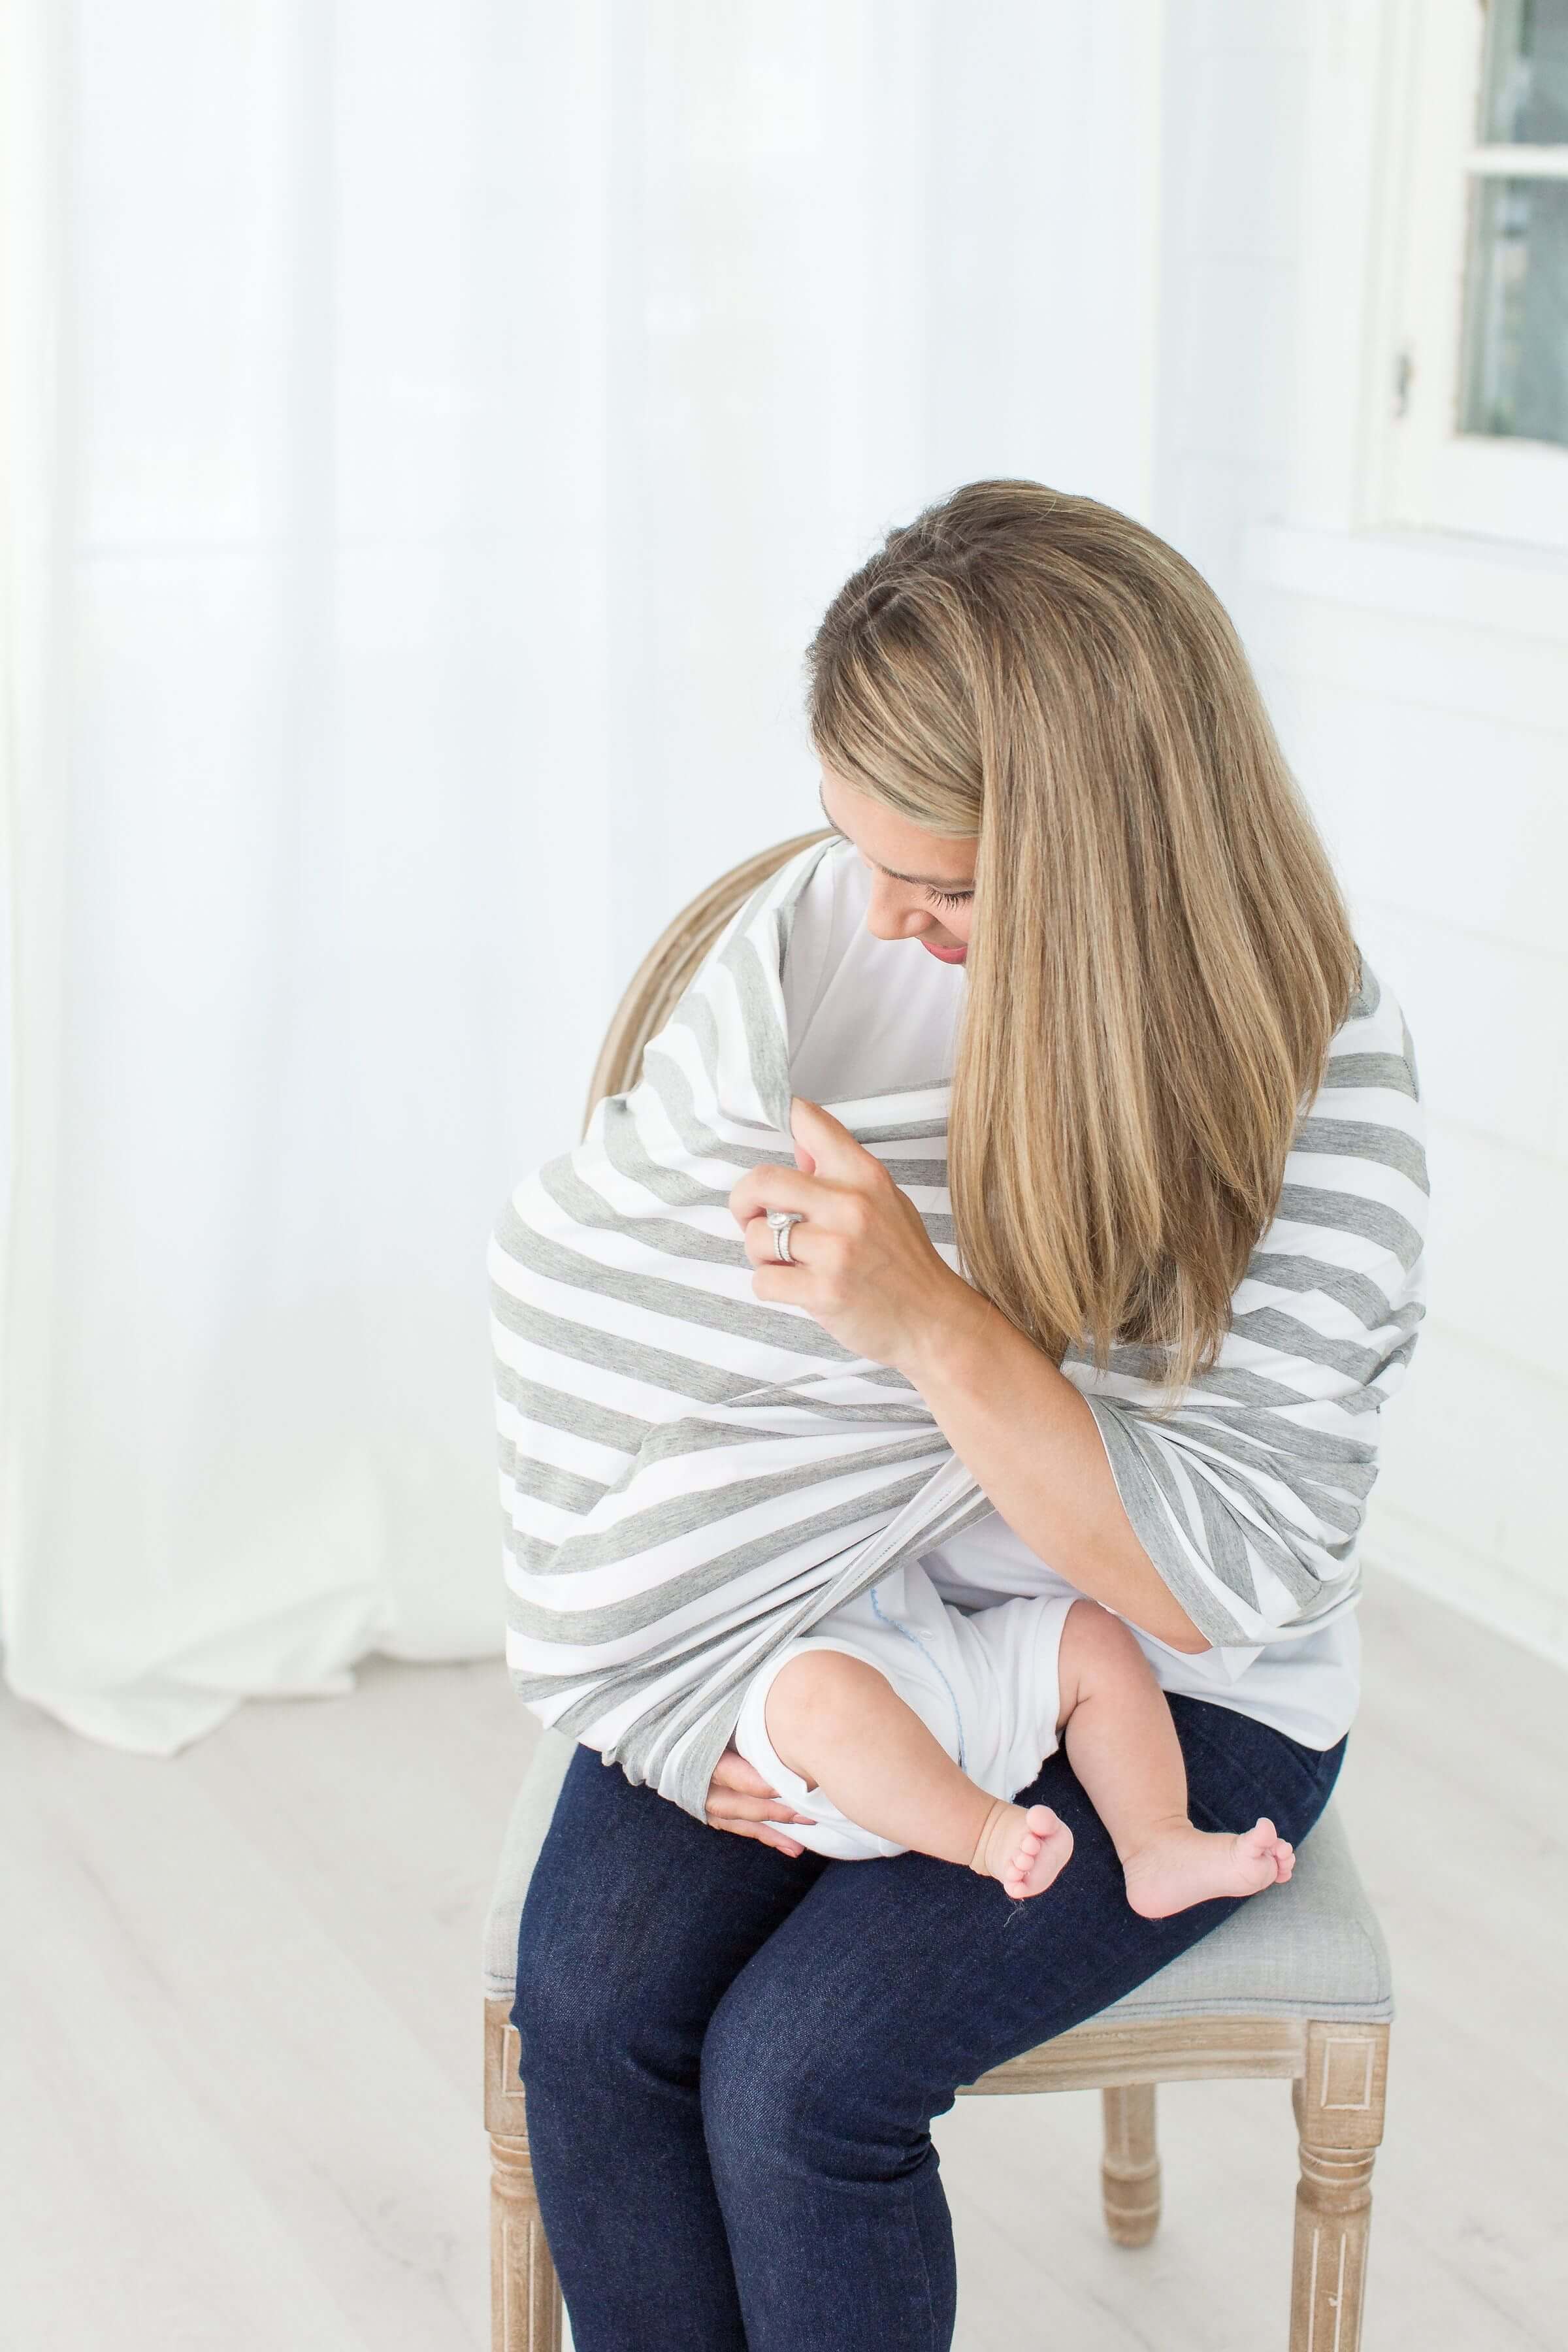 فوائد الرضاعة الطبيعية: طرق مدهشة لمساعدة الأمهات والأطفال!